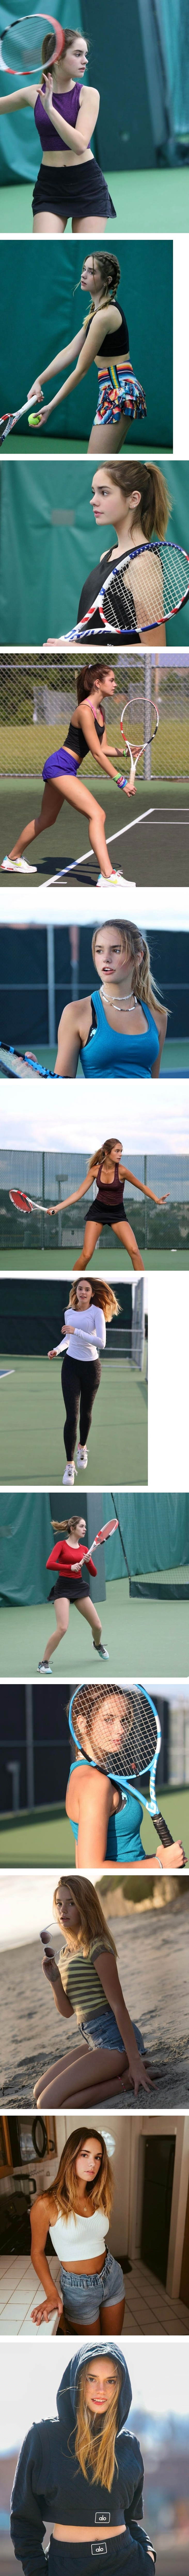 미국 17세 여자 테니스 선수 비쥬얼